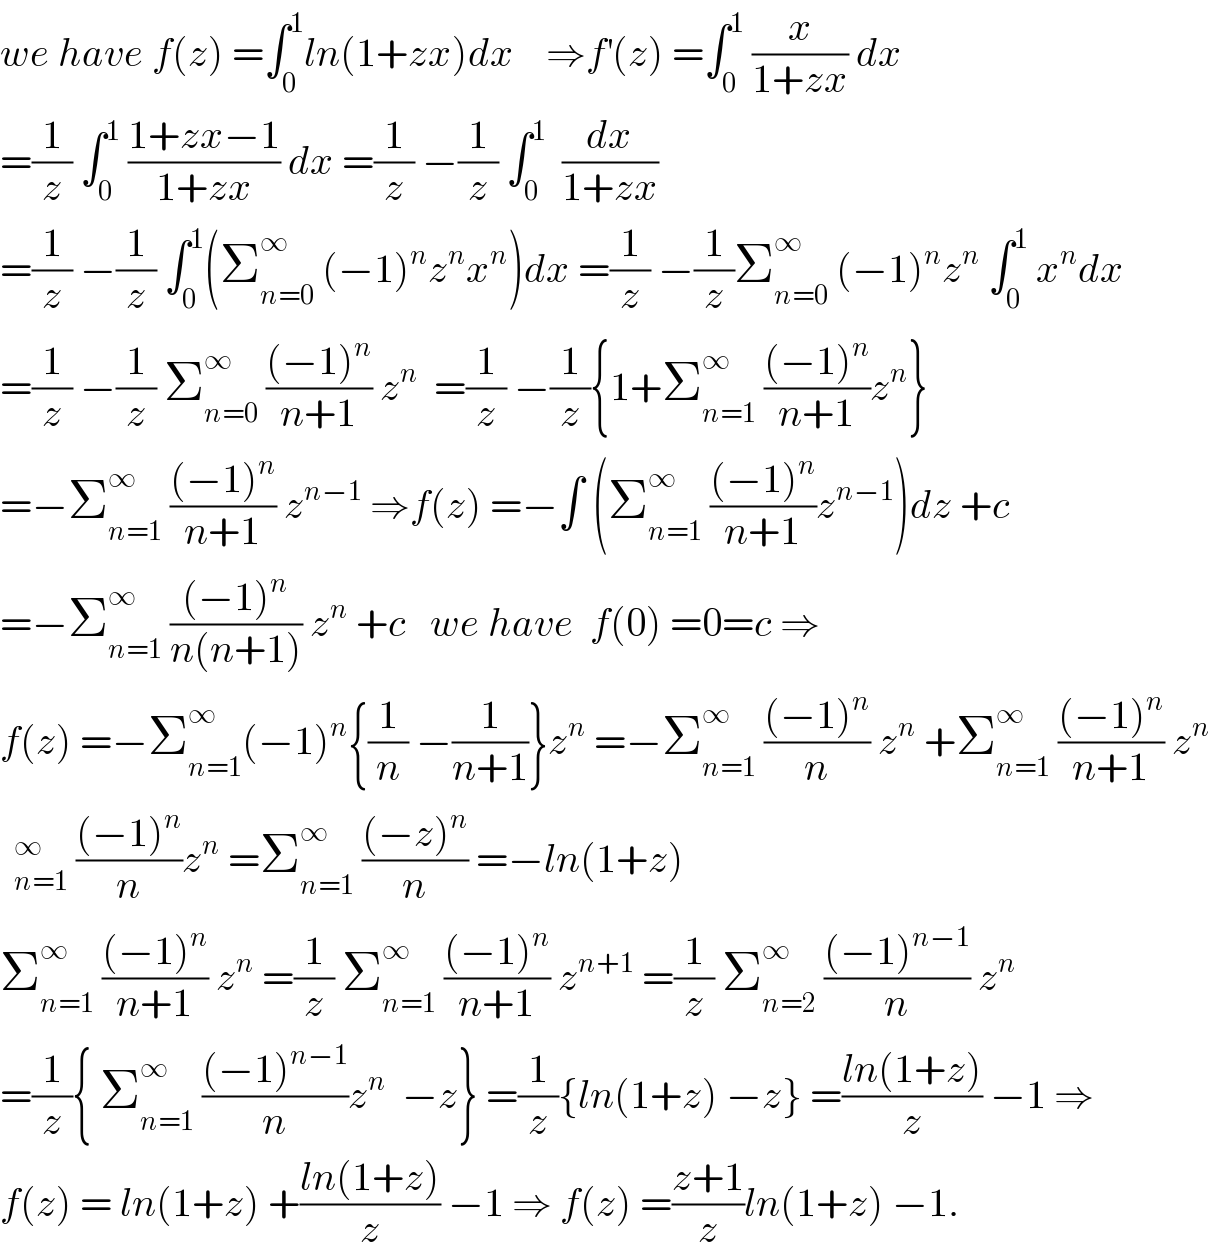 we have f(z) =∫_0 ^1 ln(1+zx)dx    ⇒f^′ (z) =∫_0 ^1  (x/(1+zx)) dx  =(1/z) ∫_0 ^1  ((1+zx−1)/(1+zx)) dx =(1/z) −(1/z) ∫_0 ^1   (dx/(1+zx))  =(1/z) −(1/z) ∫_0 ^1 (Σ_(n=0) ^∞  (−1)^n z^n x^n )dx =(1/z) −(1/z)Σ_(n=0) ^∞  (−1)^n z^n  ∫_0 ^1  x^n dx  =(1/z) −(1/z) Σ_(n=0) ^∞  (((−1)^n )/(n+1)) z^n   =(1/z) −(1/z){1+Σ_(n=1) ^∞  (((−1)^n )/(n+1))z^n }  =−Σ_(n=1) ^∞  (((−1)^n )/(n+1)) z^(n−1)  ⇒f(z) =−∫ (Σ_(n=1) ^∞  (((−1)^n )/(n+1))z^(n−1) )dz +c  =−Σ_(n=1) ^∞  (((−1)^n )/(n(n+1))) z^n  +c   we have  f(0) =0=c ⇒  f(z) =−Σ_(n=1) ^∞ (−1)^n {(1/n) −(1/(n+1))}z^n  =−Σ_(n=1) ^∞  (((−1)^n )/n) z^n  +Σ_(n=1) ^∞  (((−1)^n )/(n+1)) z^n    (((−1)^n )/n)z^n  =Σ_(n=1) ^∞  (((−z)^n )/n) =−ln(1+z)  Σ_(n=1) ^∞  (((−1)^n )/(n+1)) z^n  =(1/z) Σ_(n=1) ^∞  (((−1)^n )/(n+1)) z^(n+1)  =(1/z) Σ_(n=2) ^∞  (((−1)^(n−1) )/n) z^n   =(1/z){ Σ_(n=1) ^∞  (((−1)^(n−1) )/n)z^n   −z} =(1/z){ln(1+z) −z} =((ln(1+z))/z) −1 ⇒  f(z) = ln(1+z) +((ln(1+z))/z) −1 ⇒ f(z) =((z+1)/z)ln(1+z) −1.  